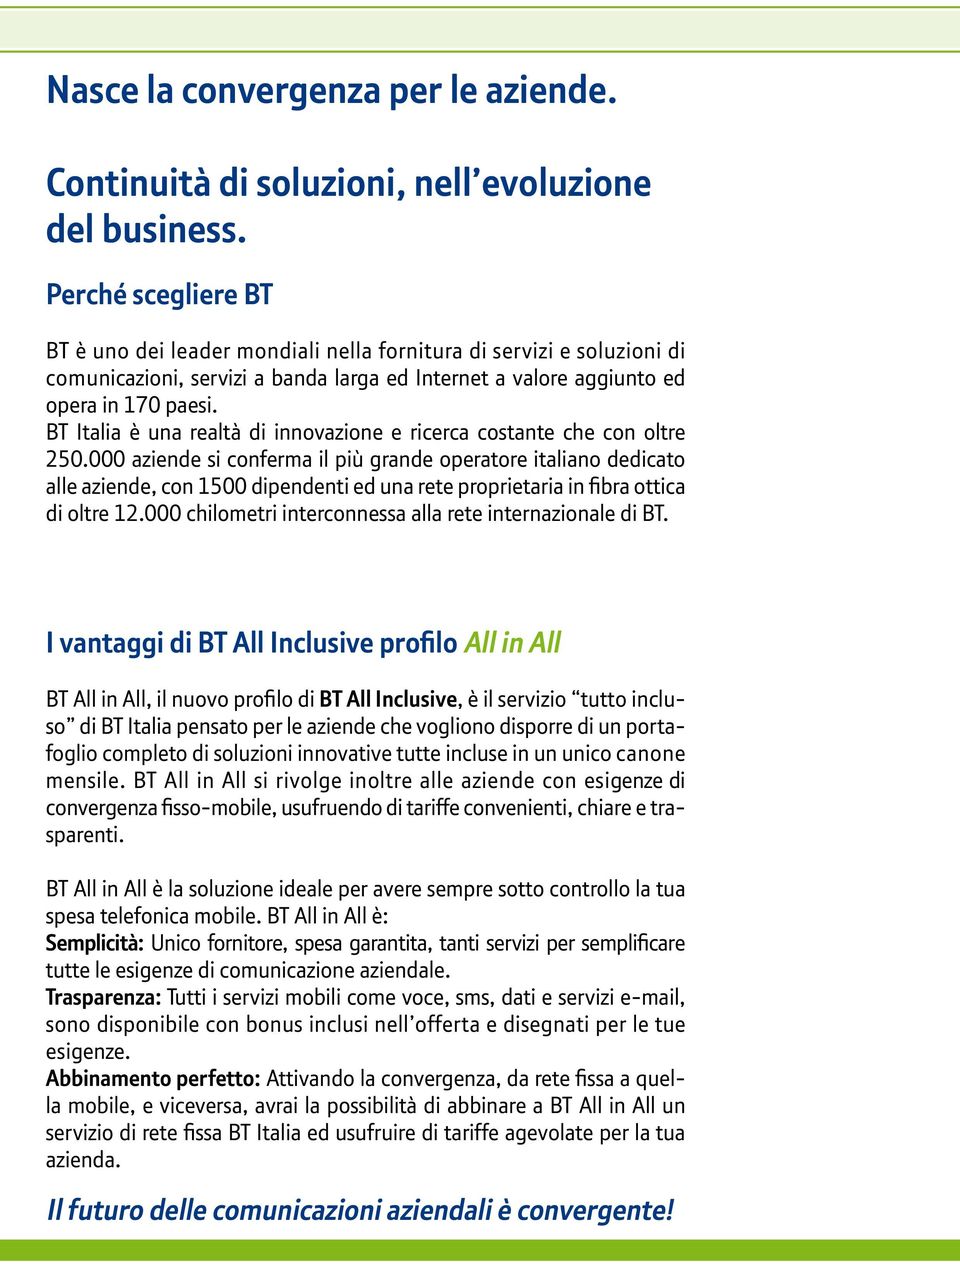 BT Italia è una realtà di innovazione e ricerca costante che con oltre 250.